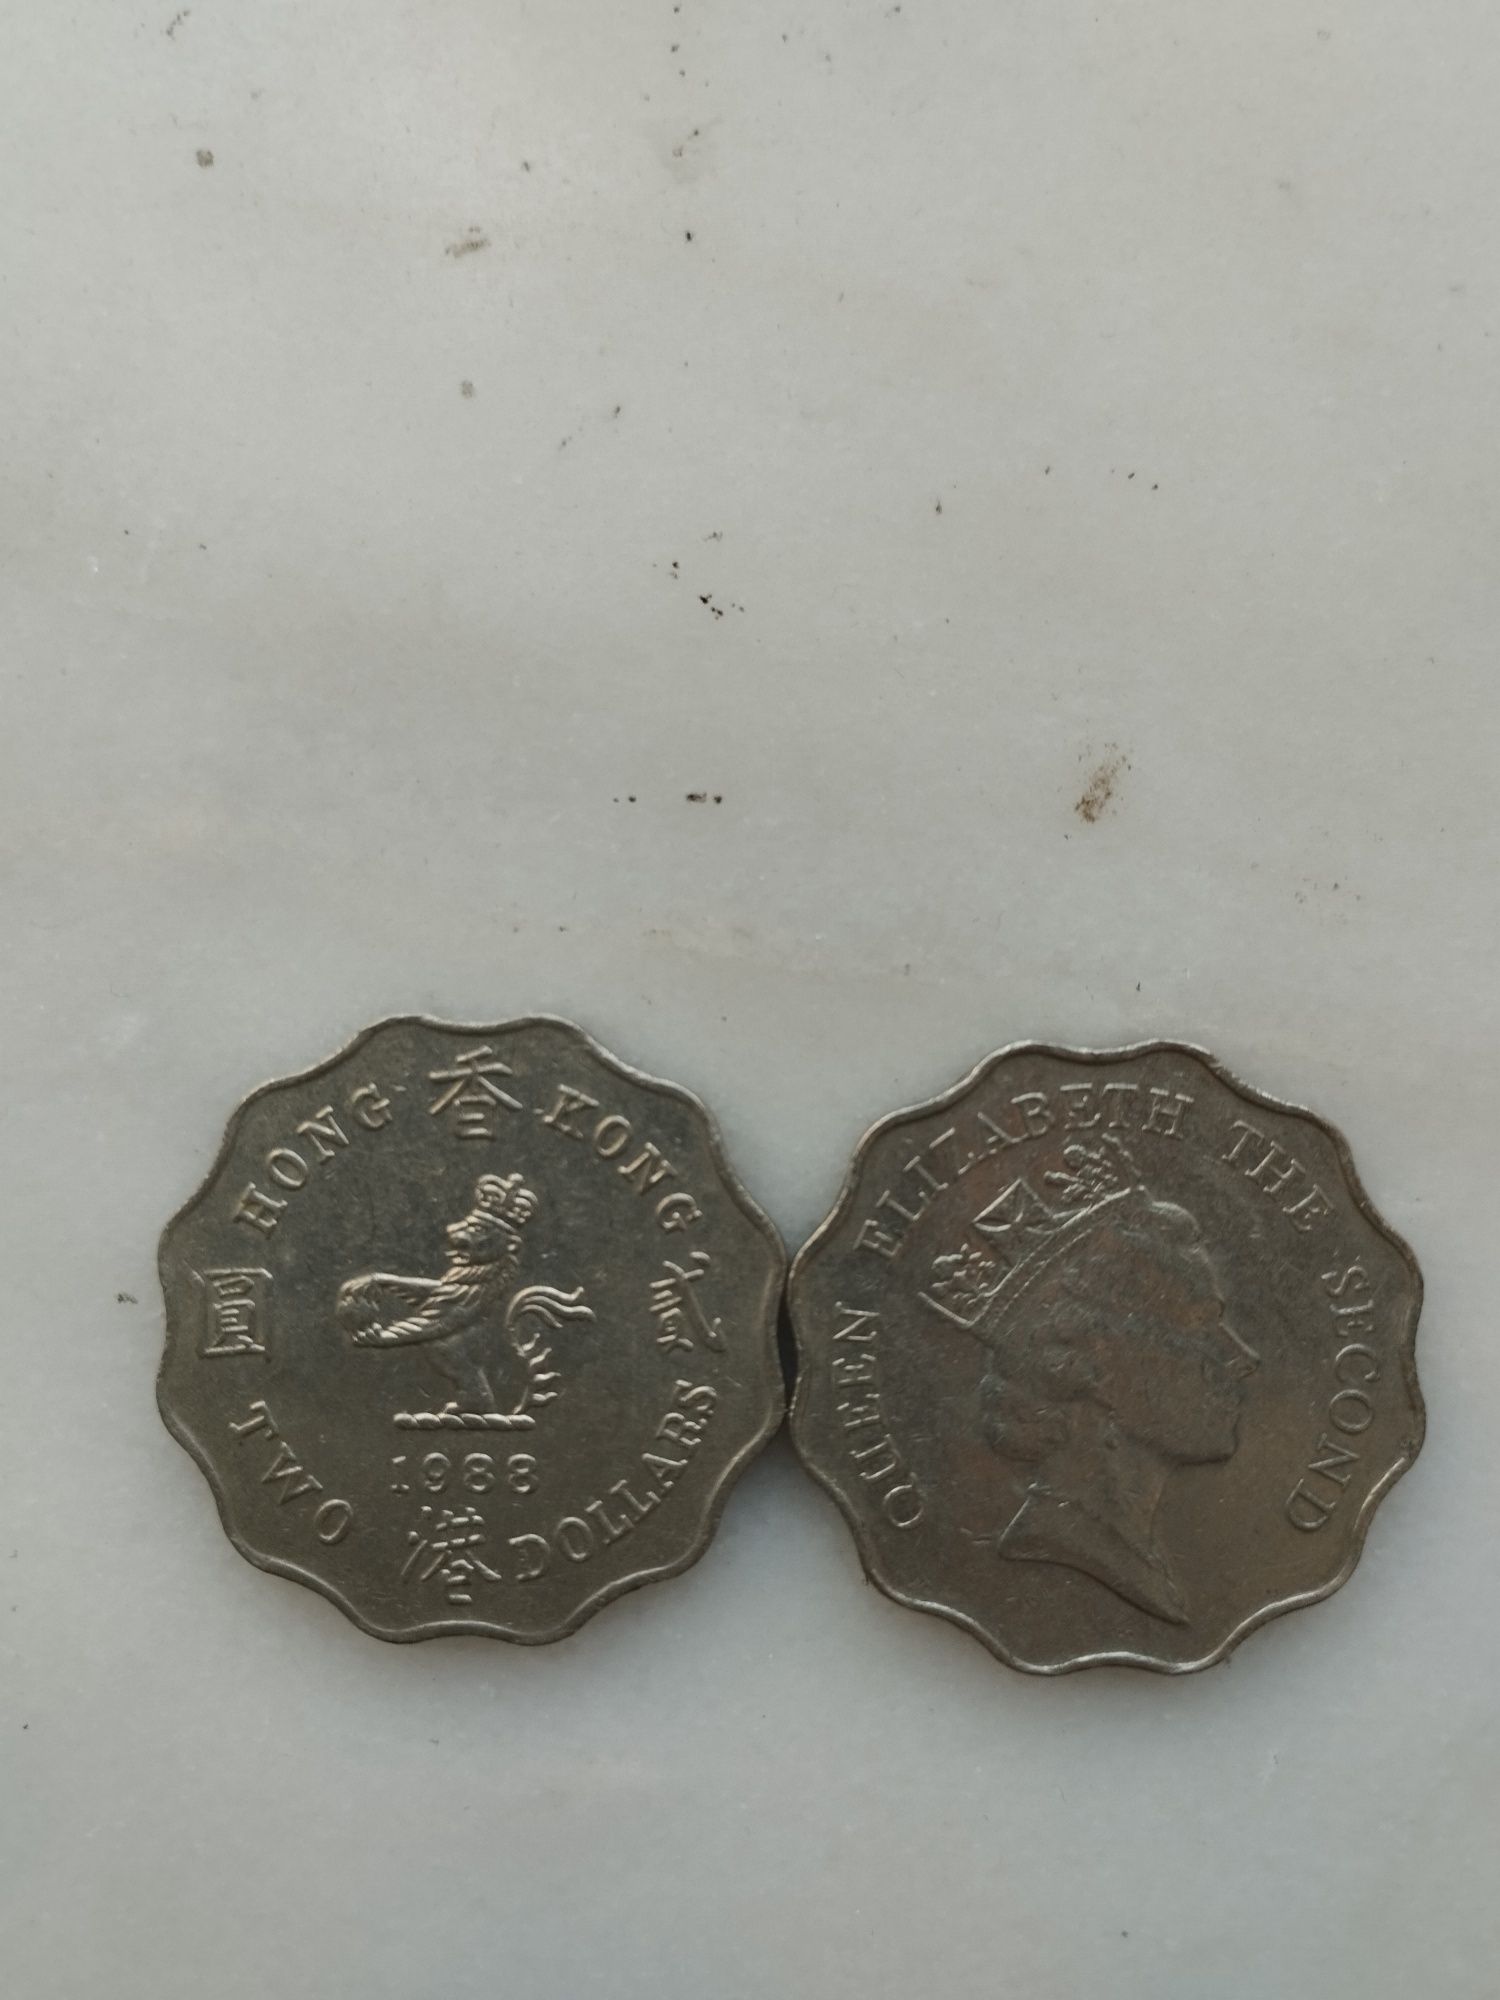 Vendo moedas muito raras